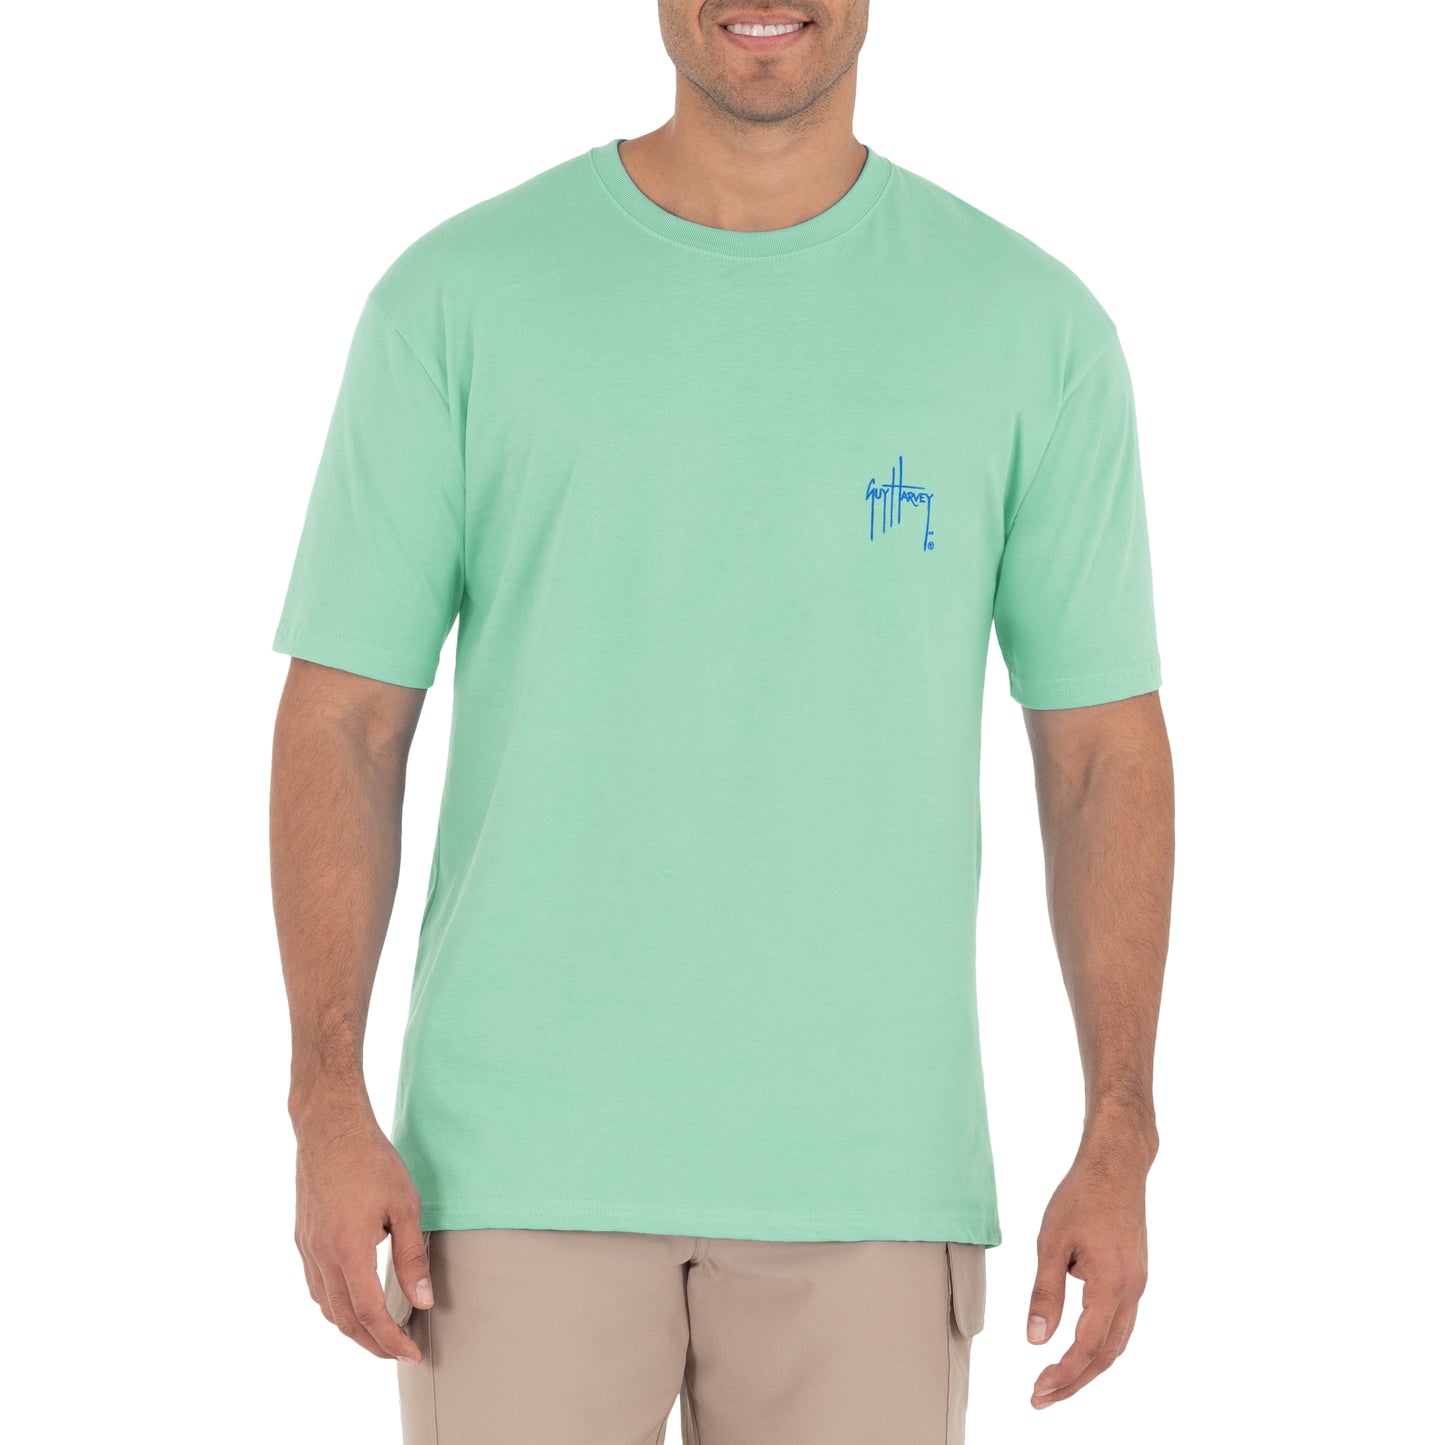 Men's Sunset Sailfish Short Sleeve Green T-Shirt View 2